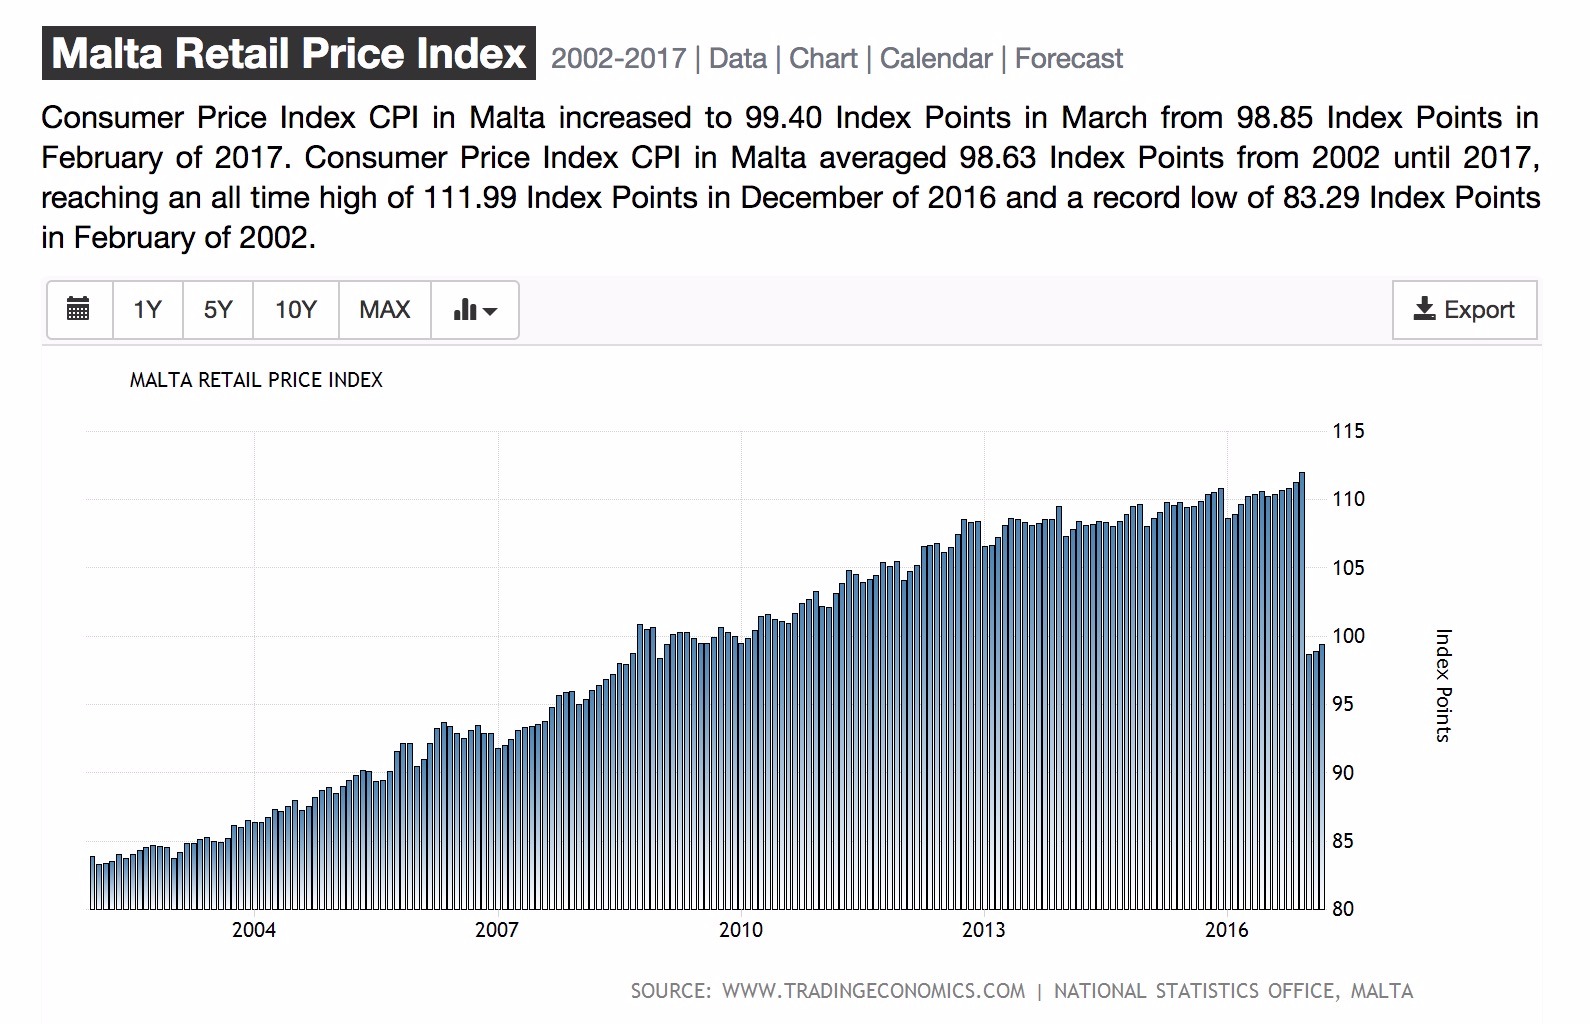 Rpi Index Chart